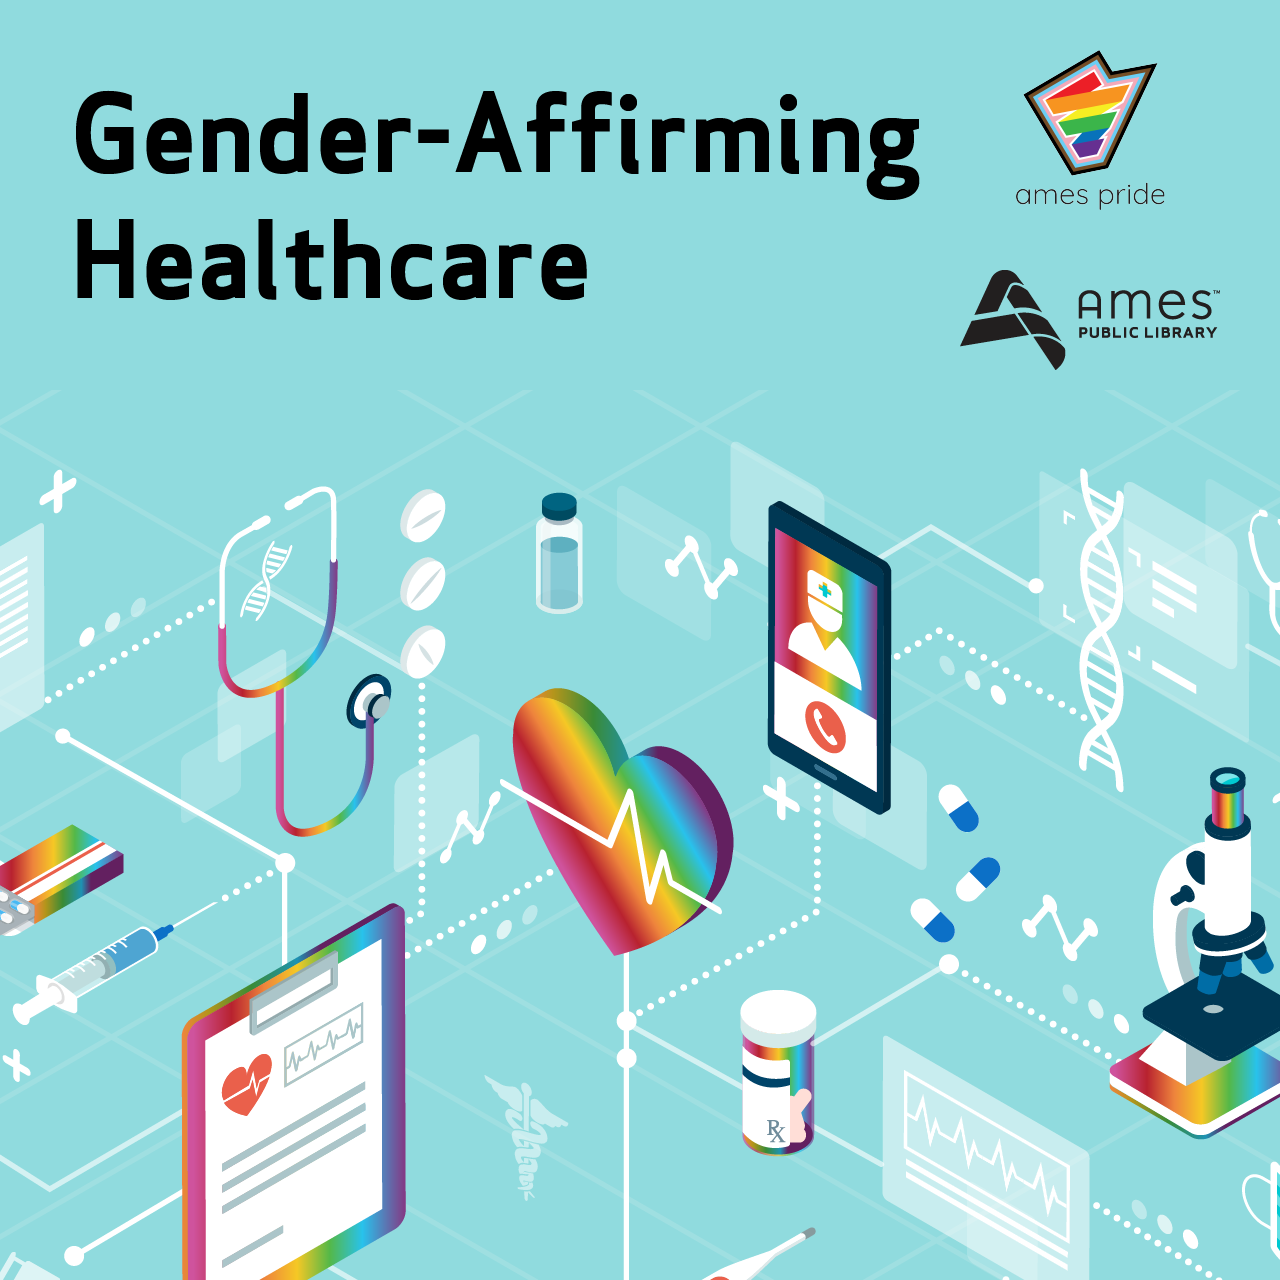 Gender-Affirming Healthcare